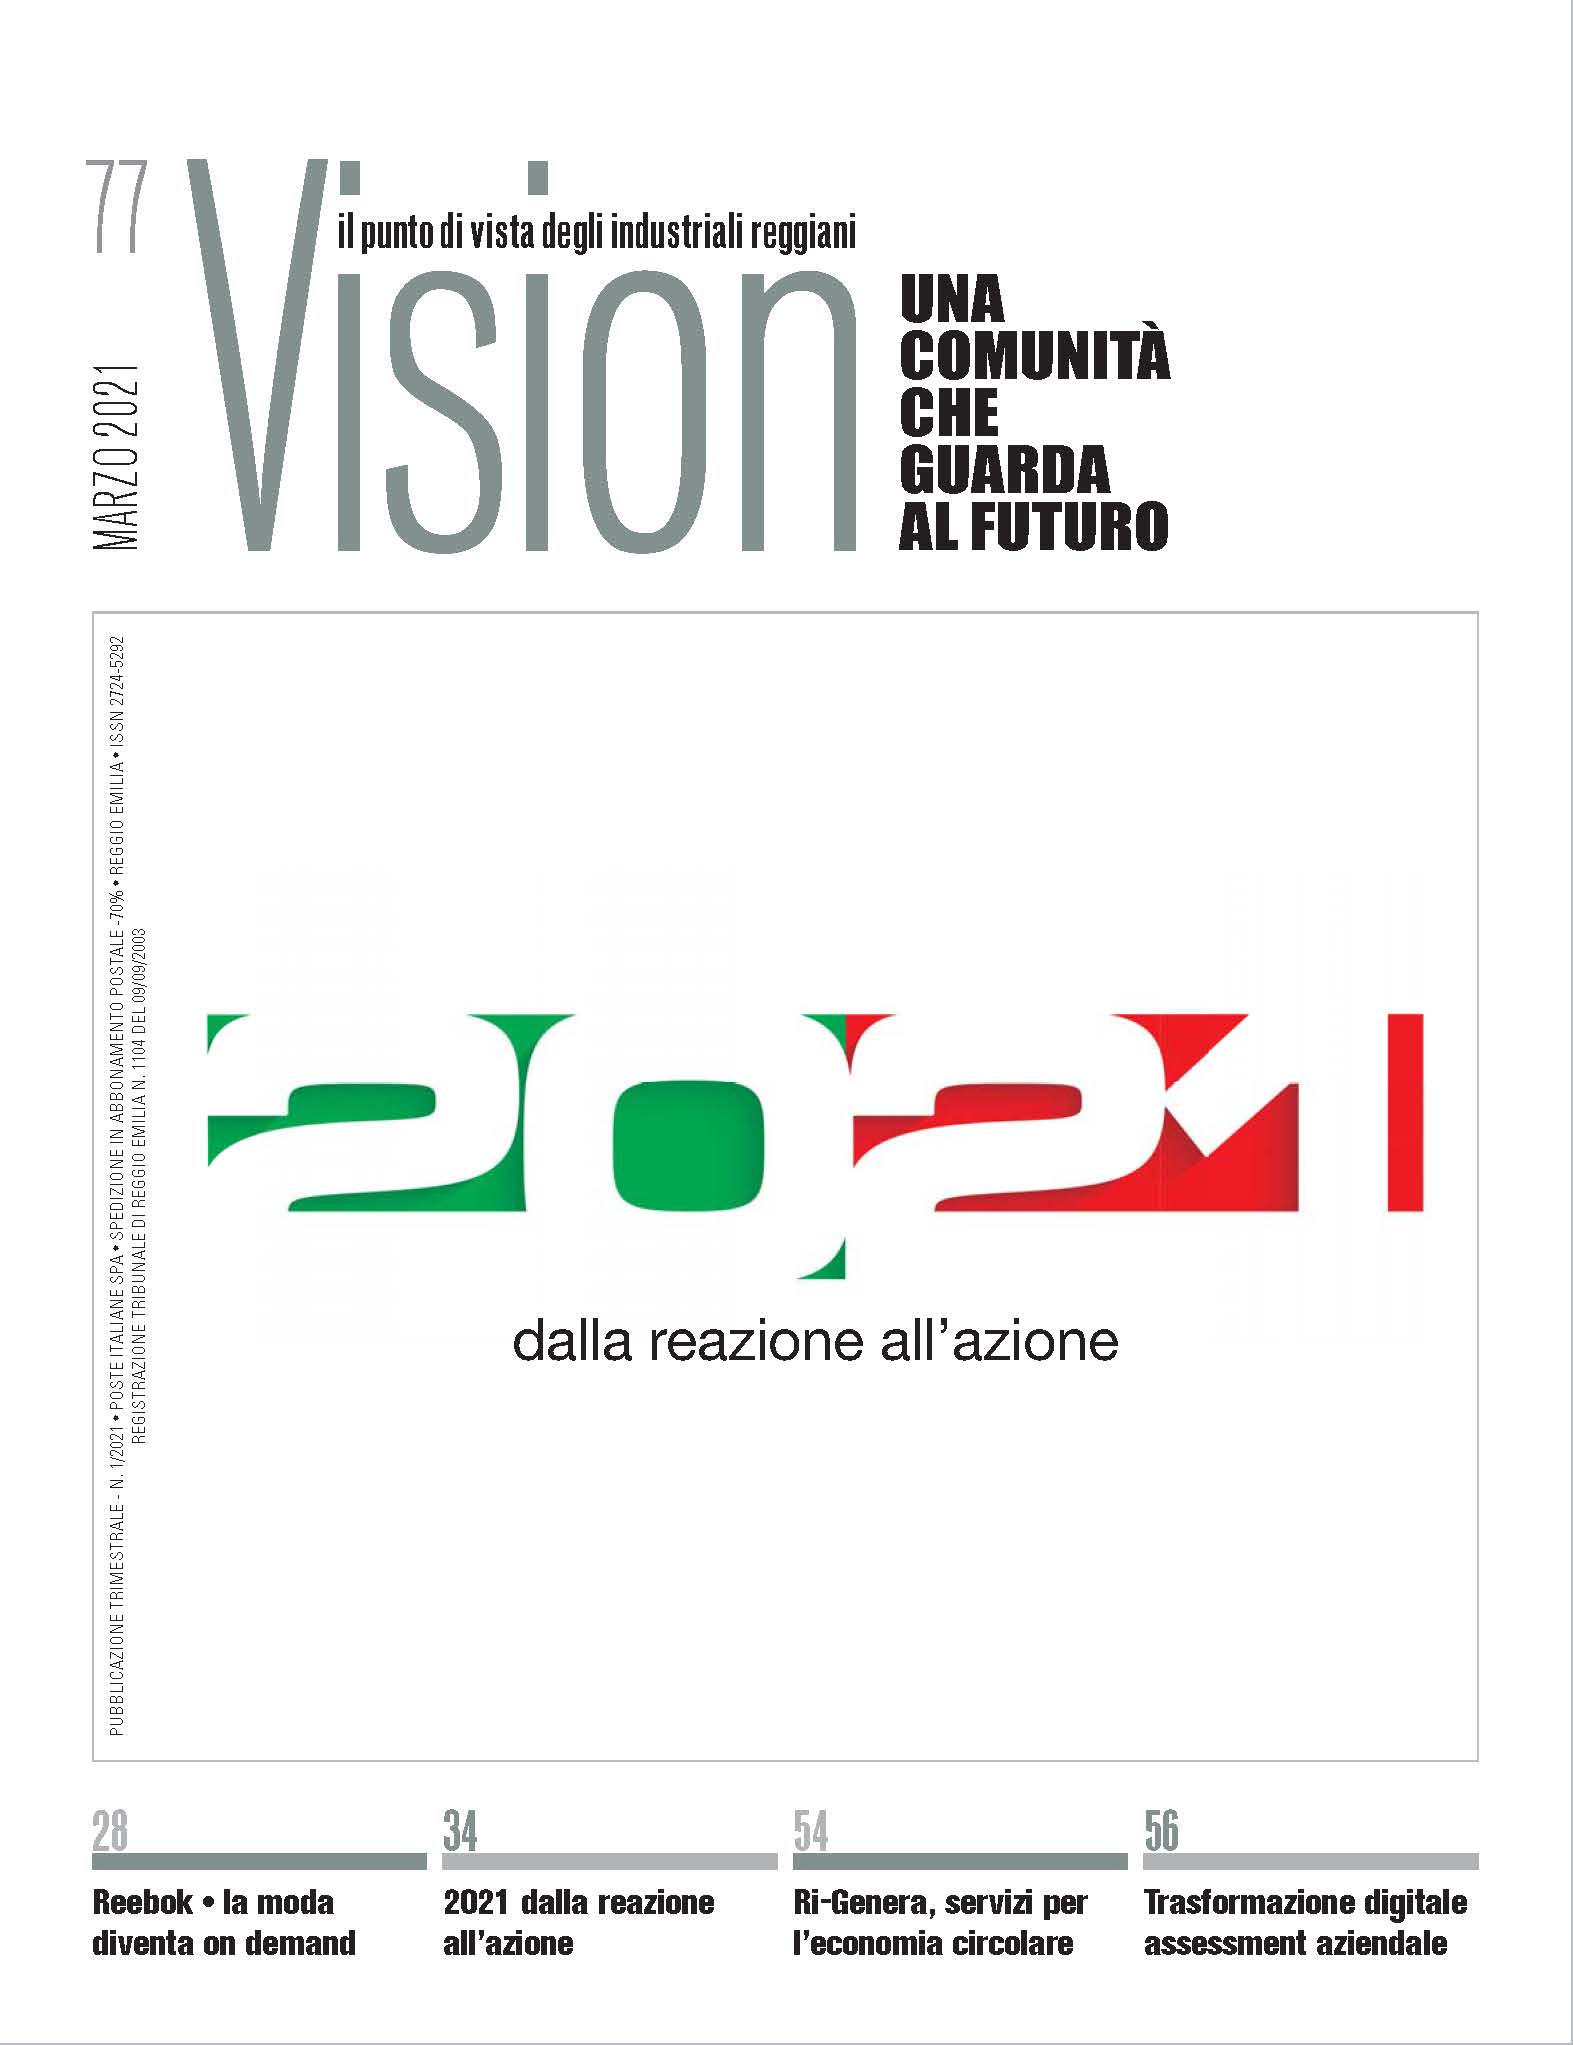 Vision 77 - Una comunità che guarda al futuro